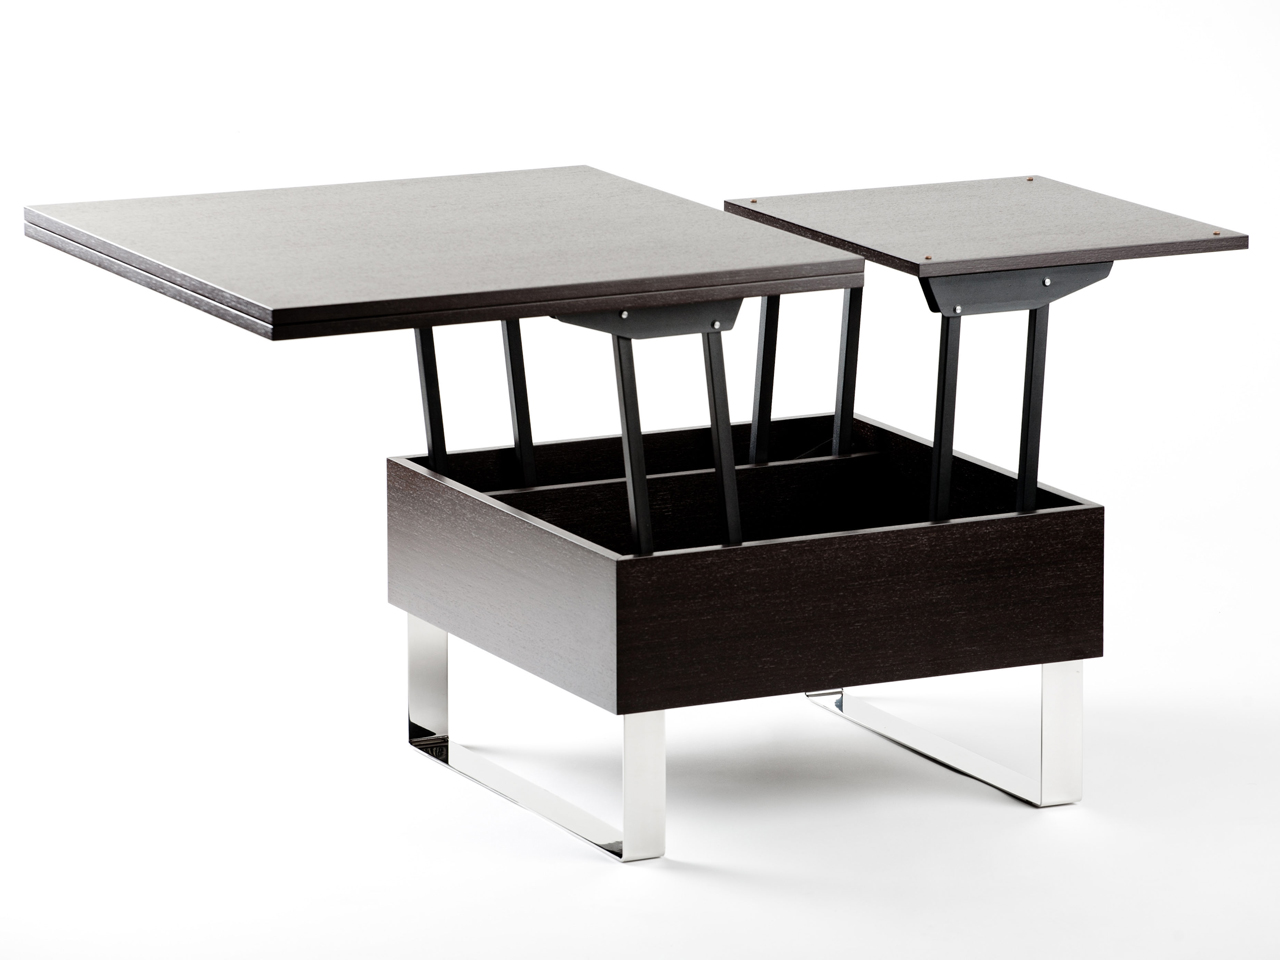 Трансформирующиеся столы — 30 моделей